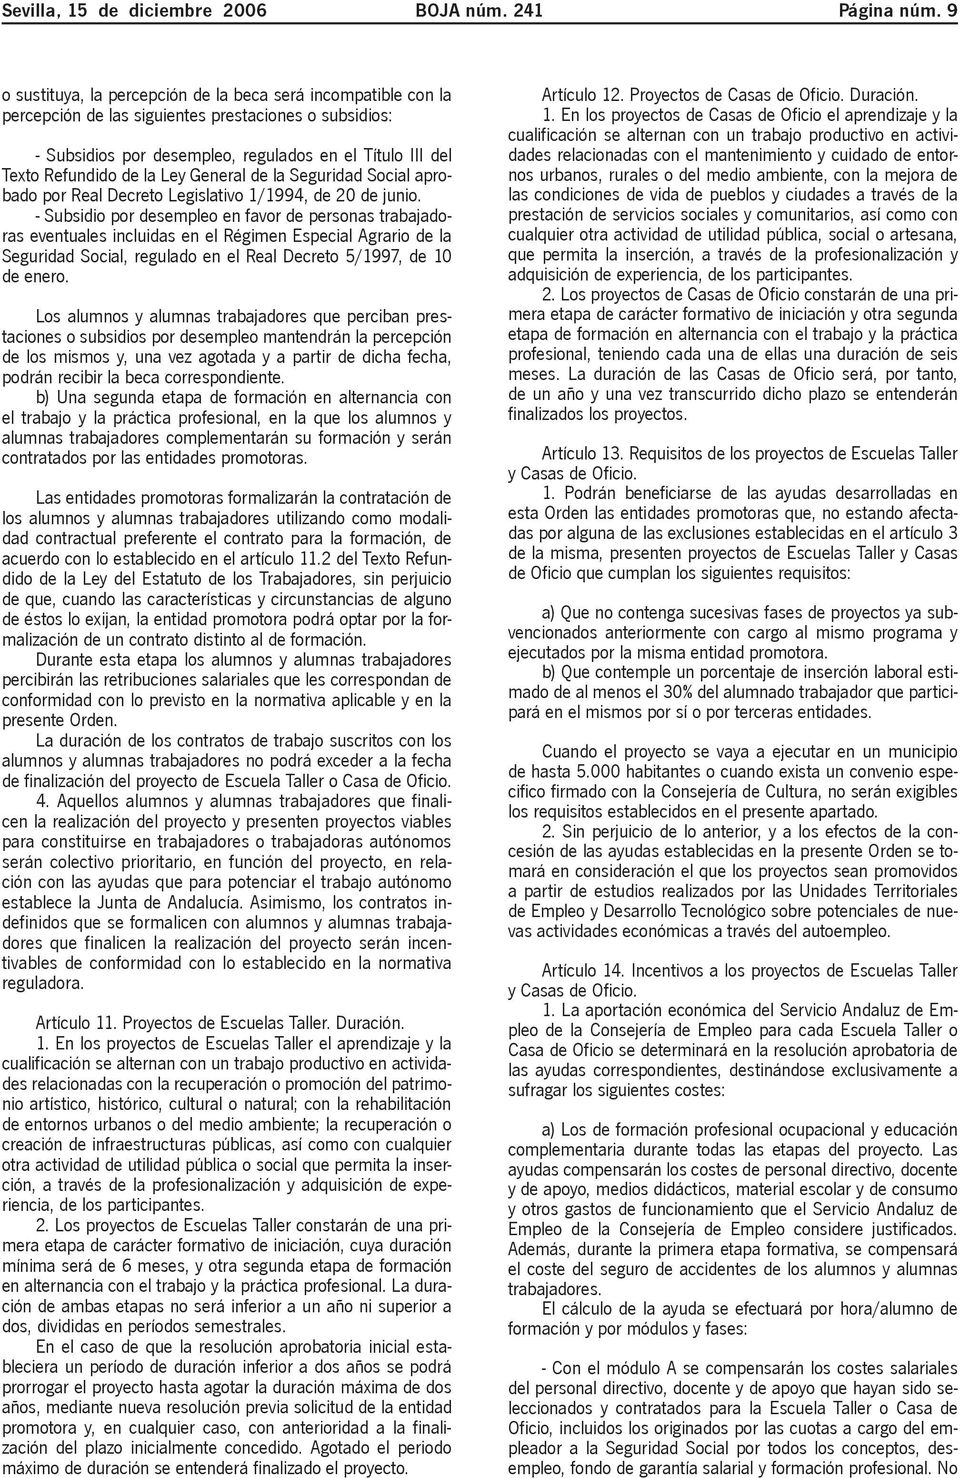 Ley General de la Seguridad Social aprobado por Real Decreto Legislativo 1/1994, de 20 de junio.